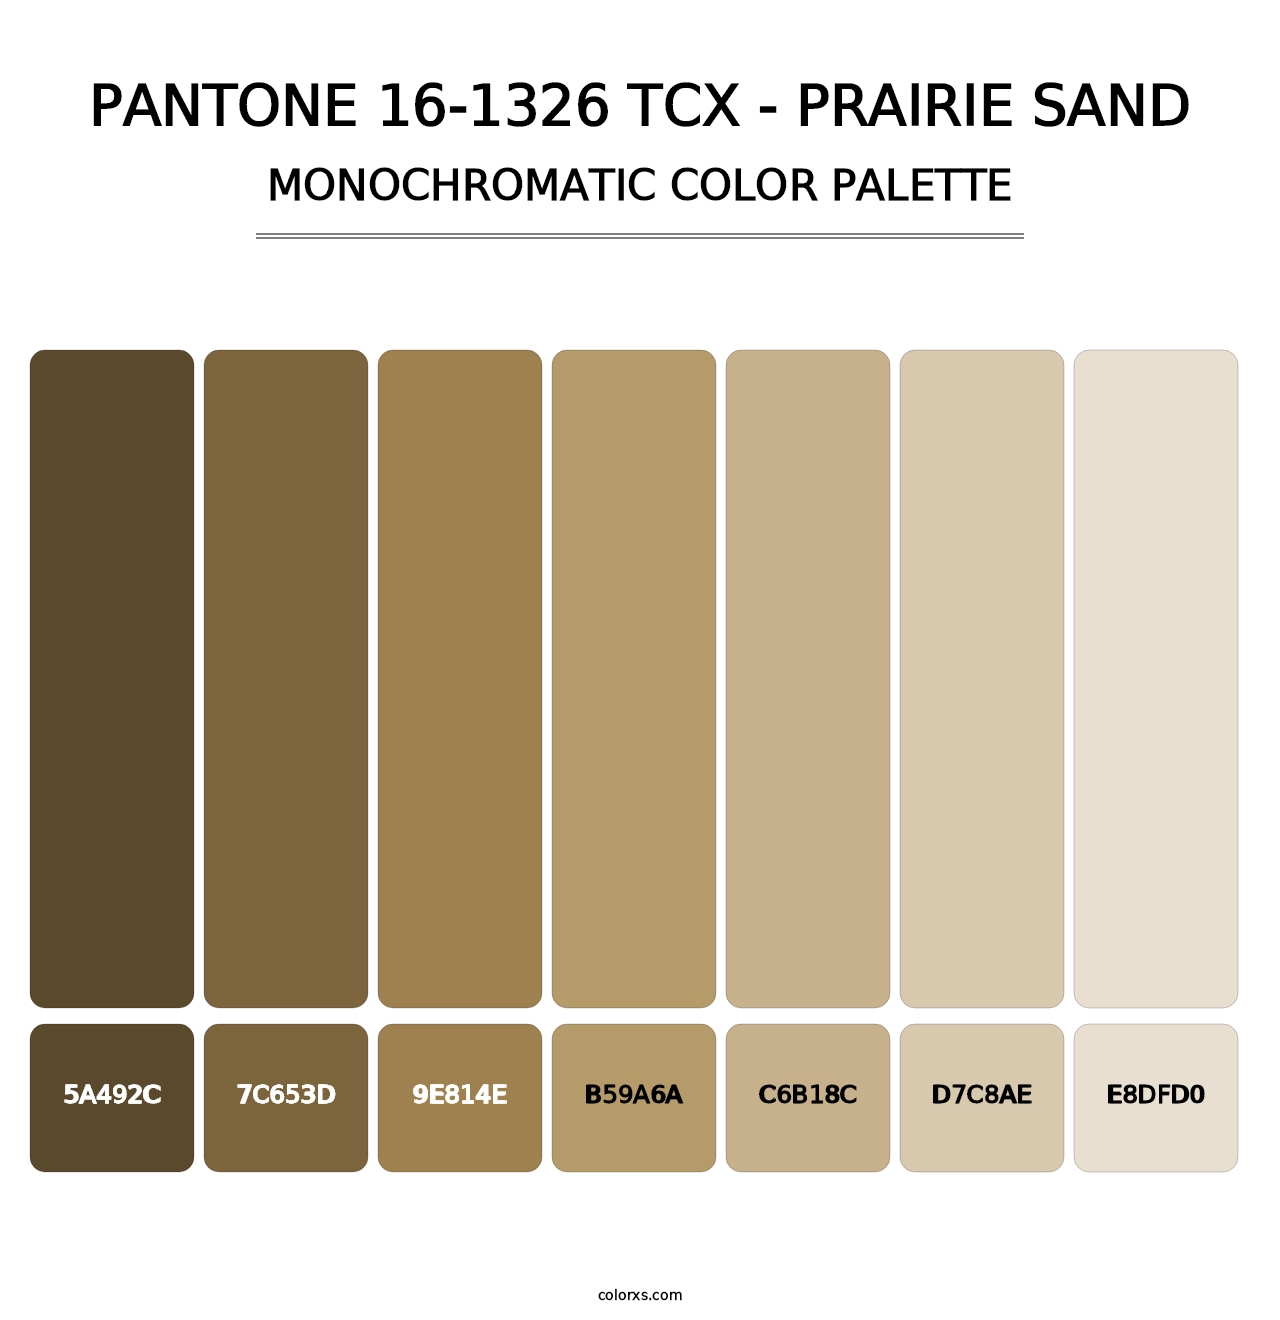 PANTONE 16-1326 TCX - Prairie Sand - Monochromatic Color Palette